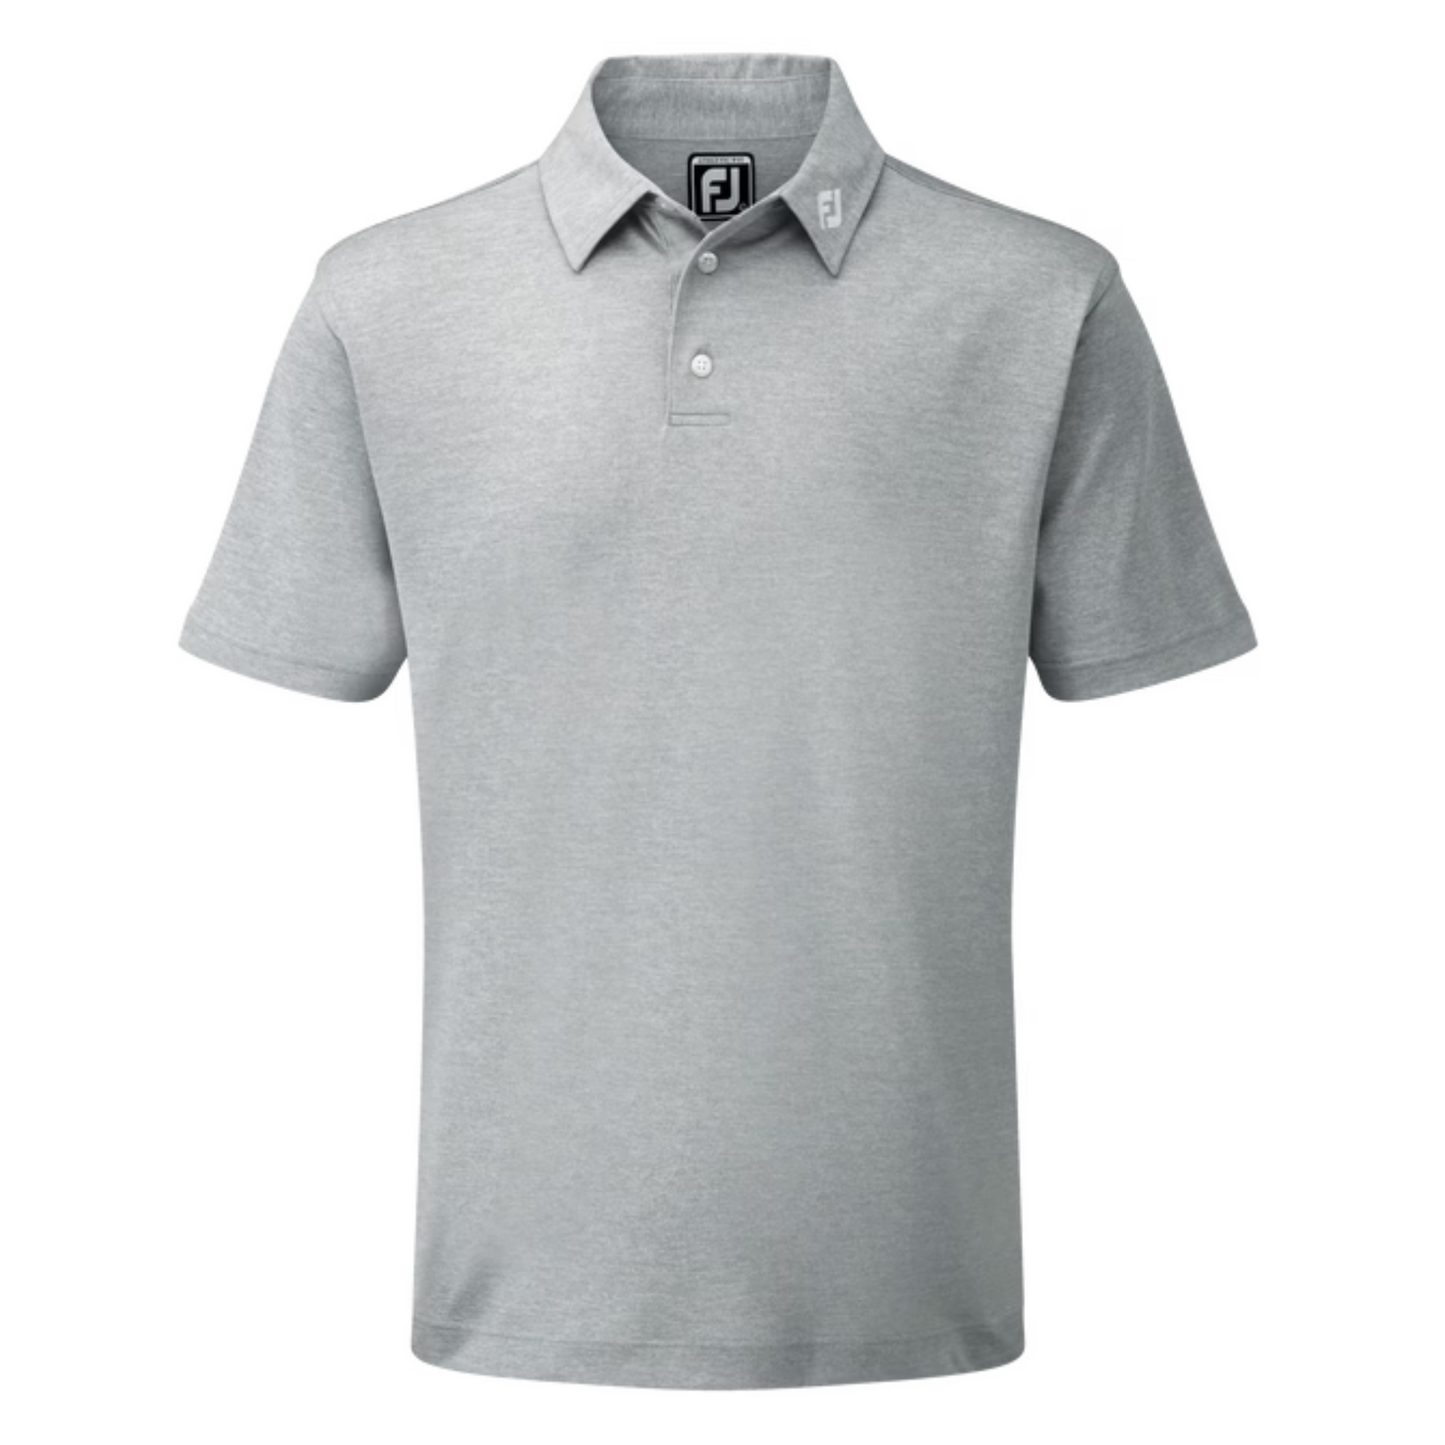 Footjoy Golf Stretch Pique Polo Shirt Grey S 